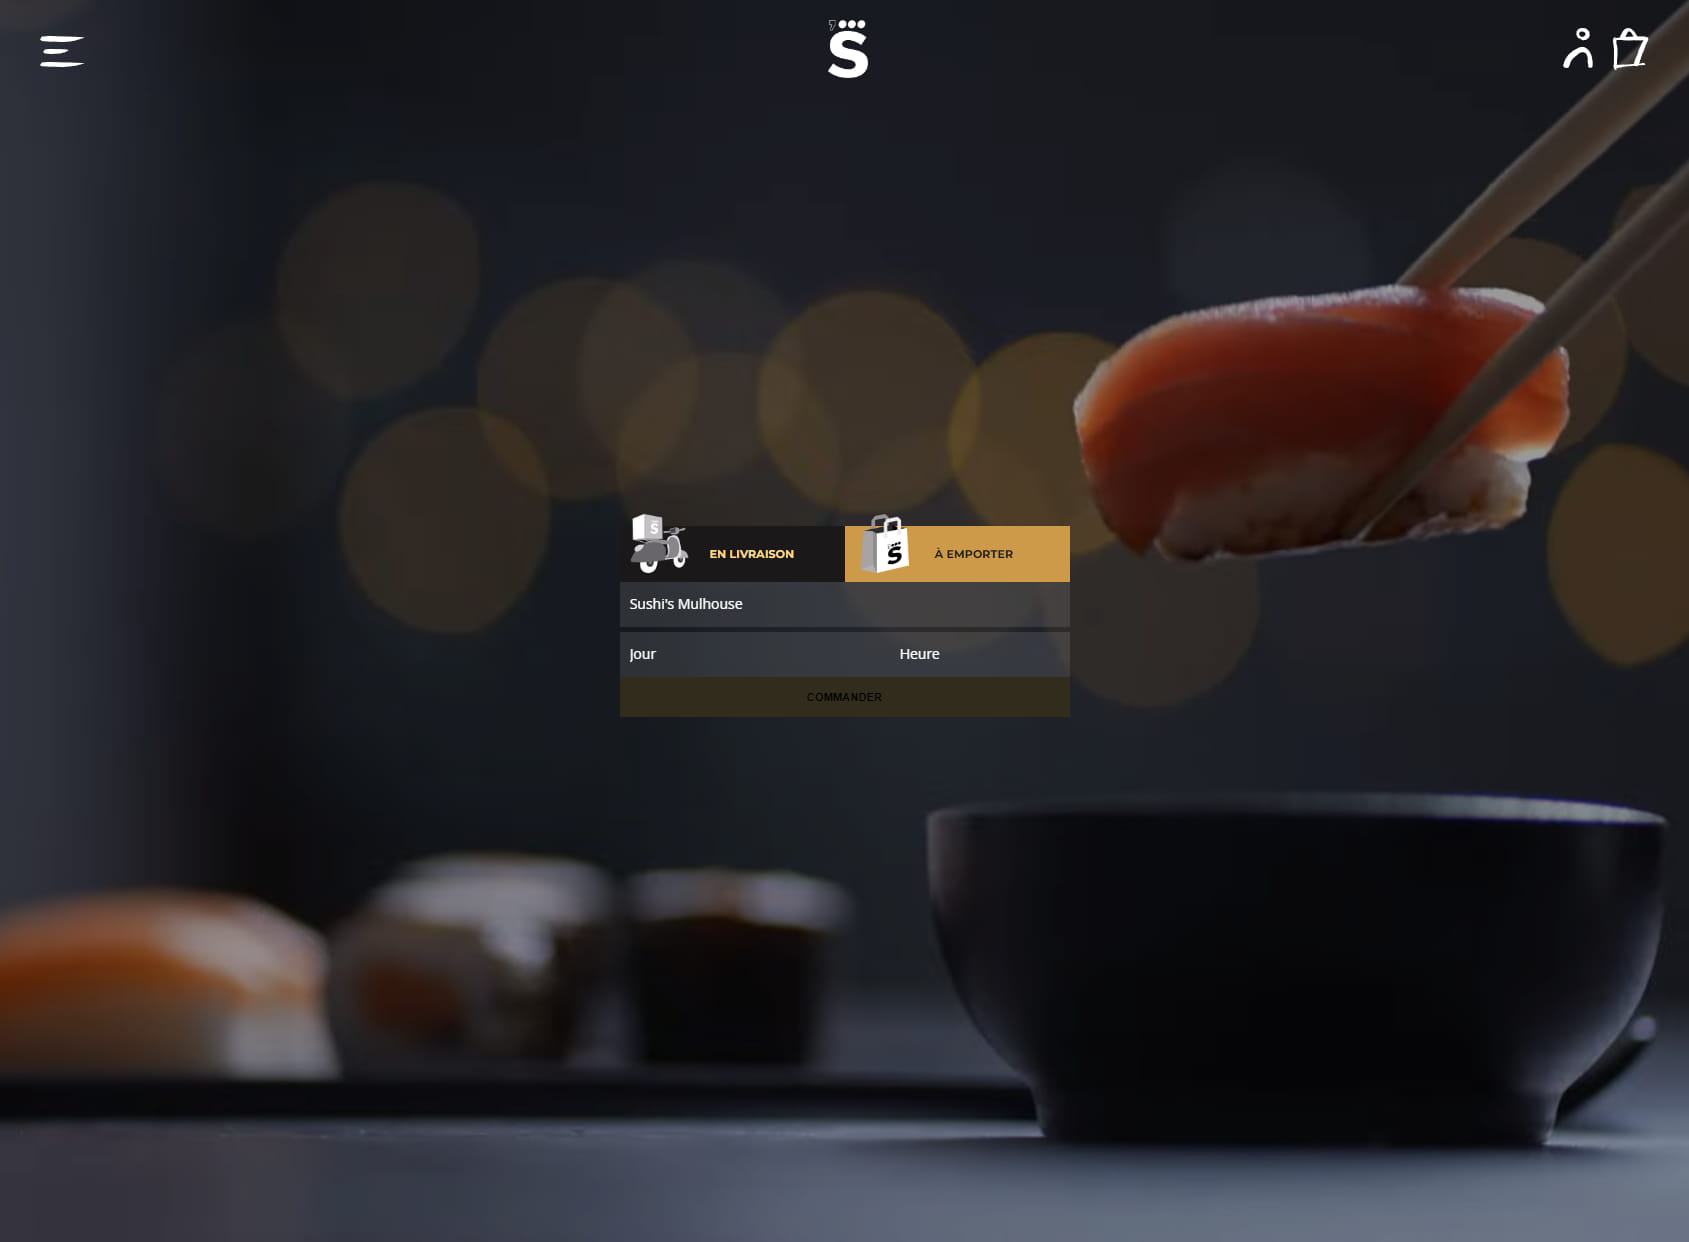 Sushi’s Mulhouse